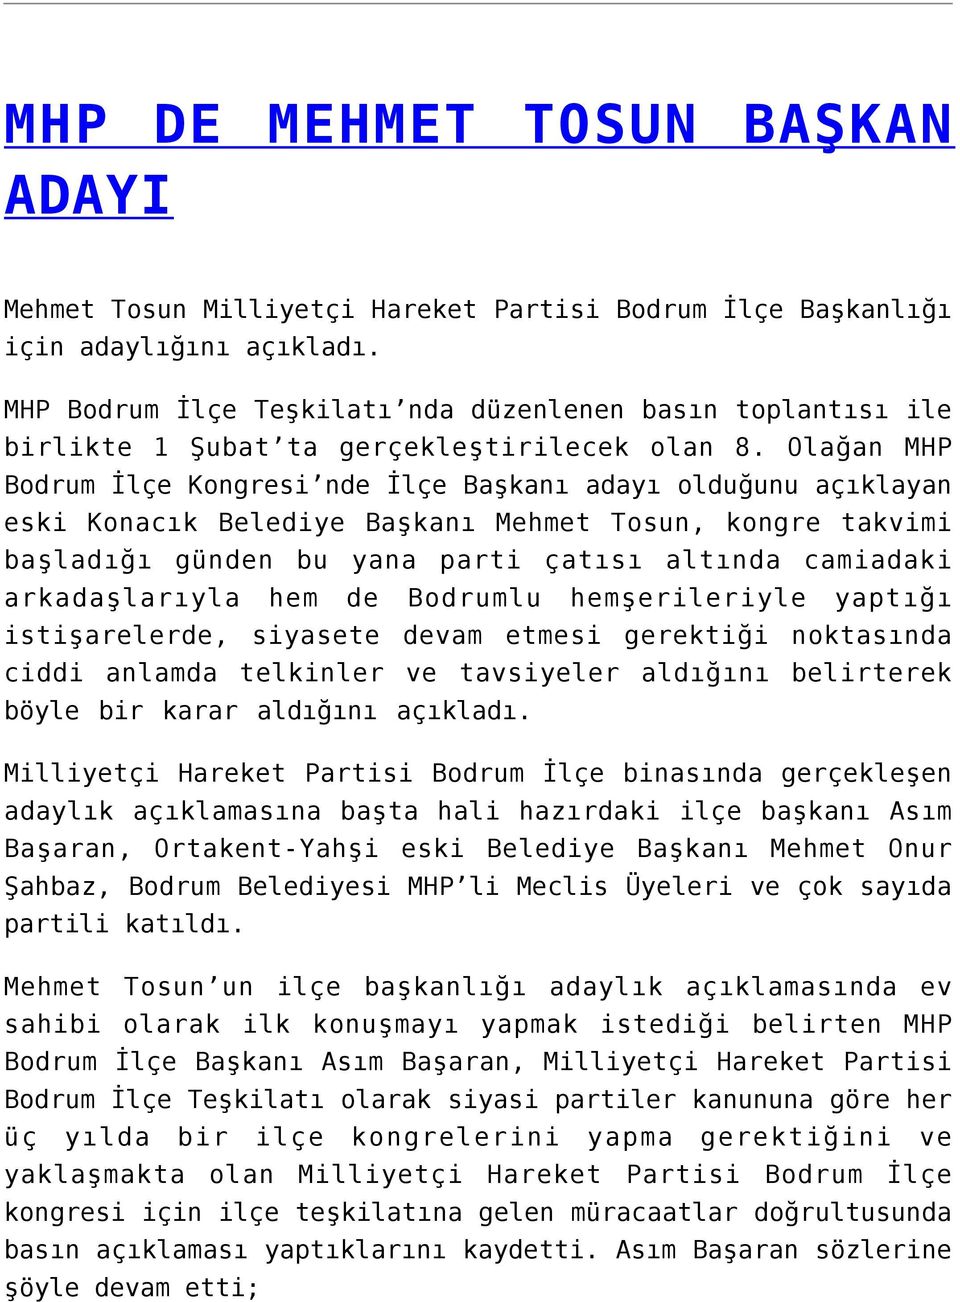 Olağan MHP Bodrum İlçe Kongresi nde İlçe Başkanı adayı olduğunu açıklayan eski Konacık Belediye Başkanı Mehmet Tosun, kongre takvimi başladığı günden bu yana parti çatısı altında camiadaki